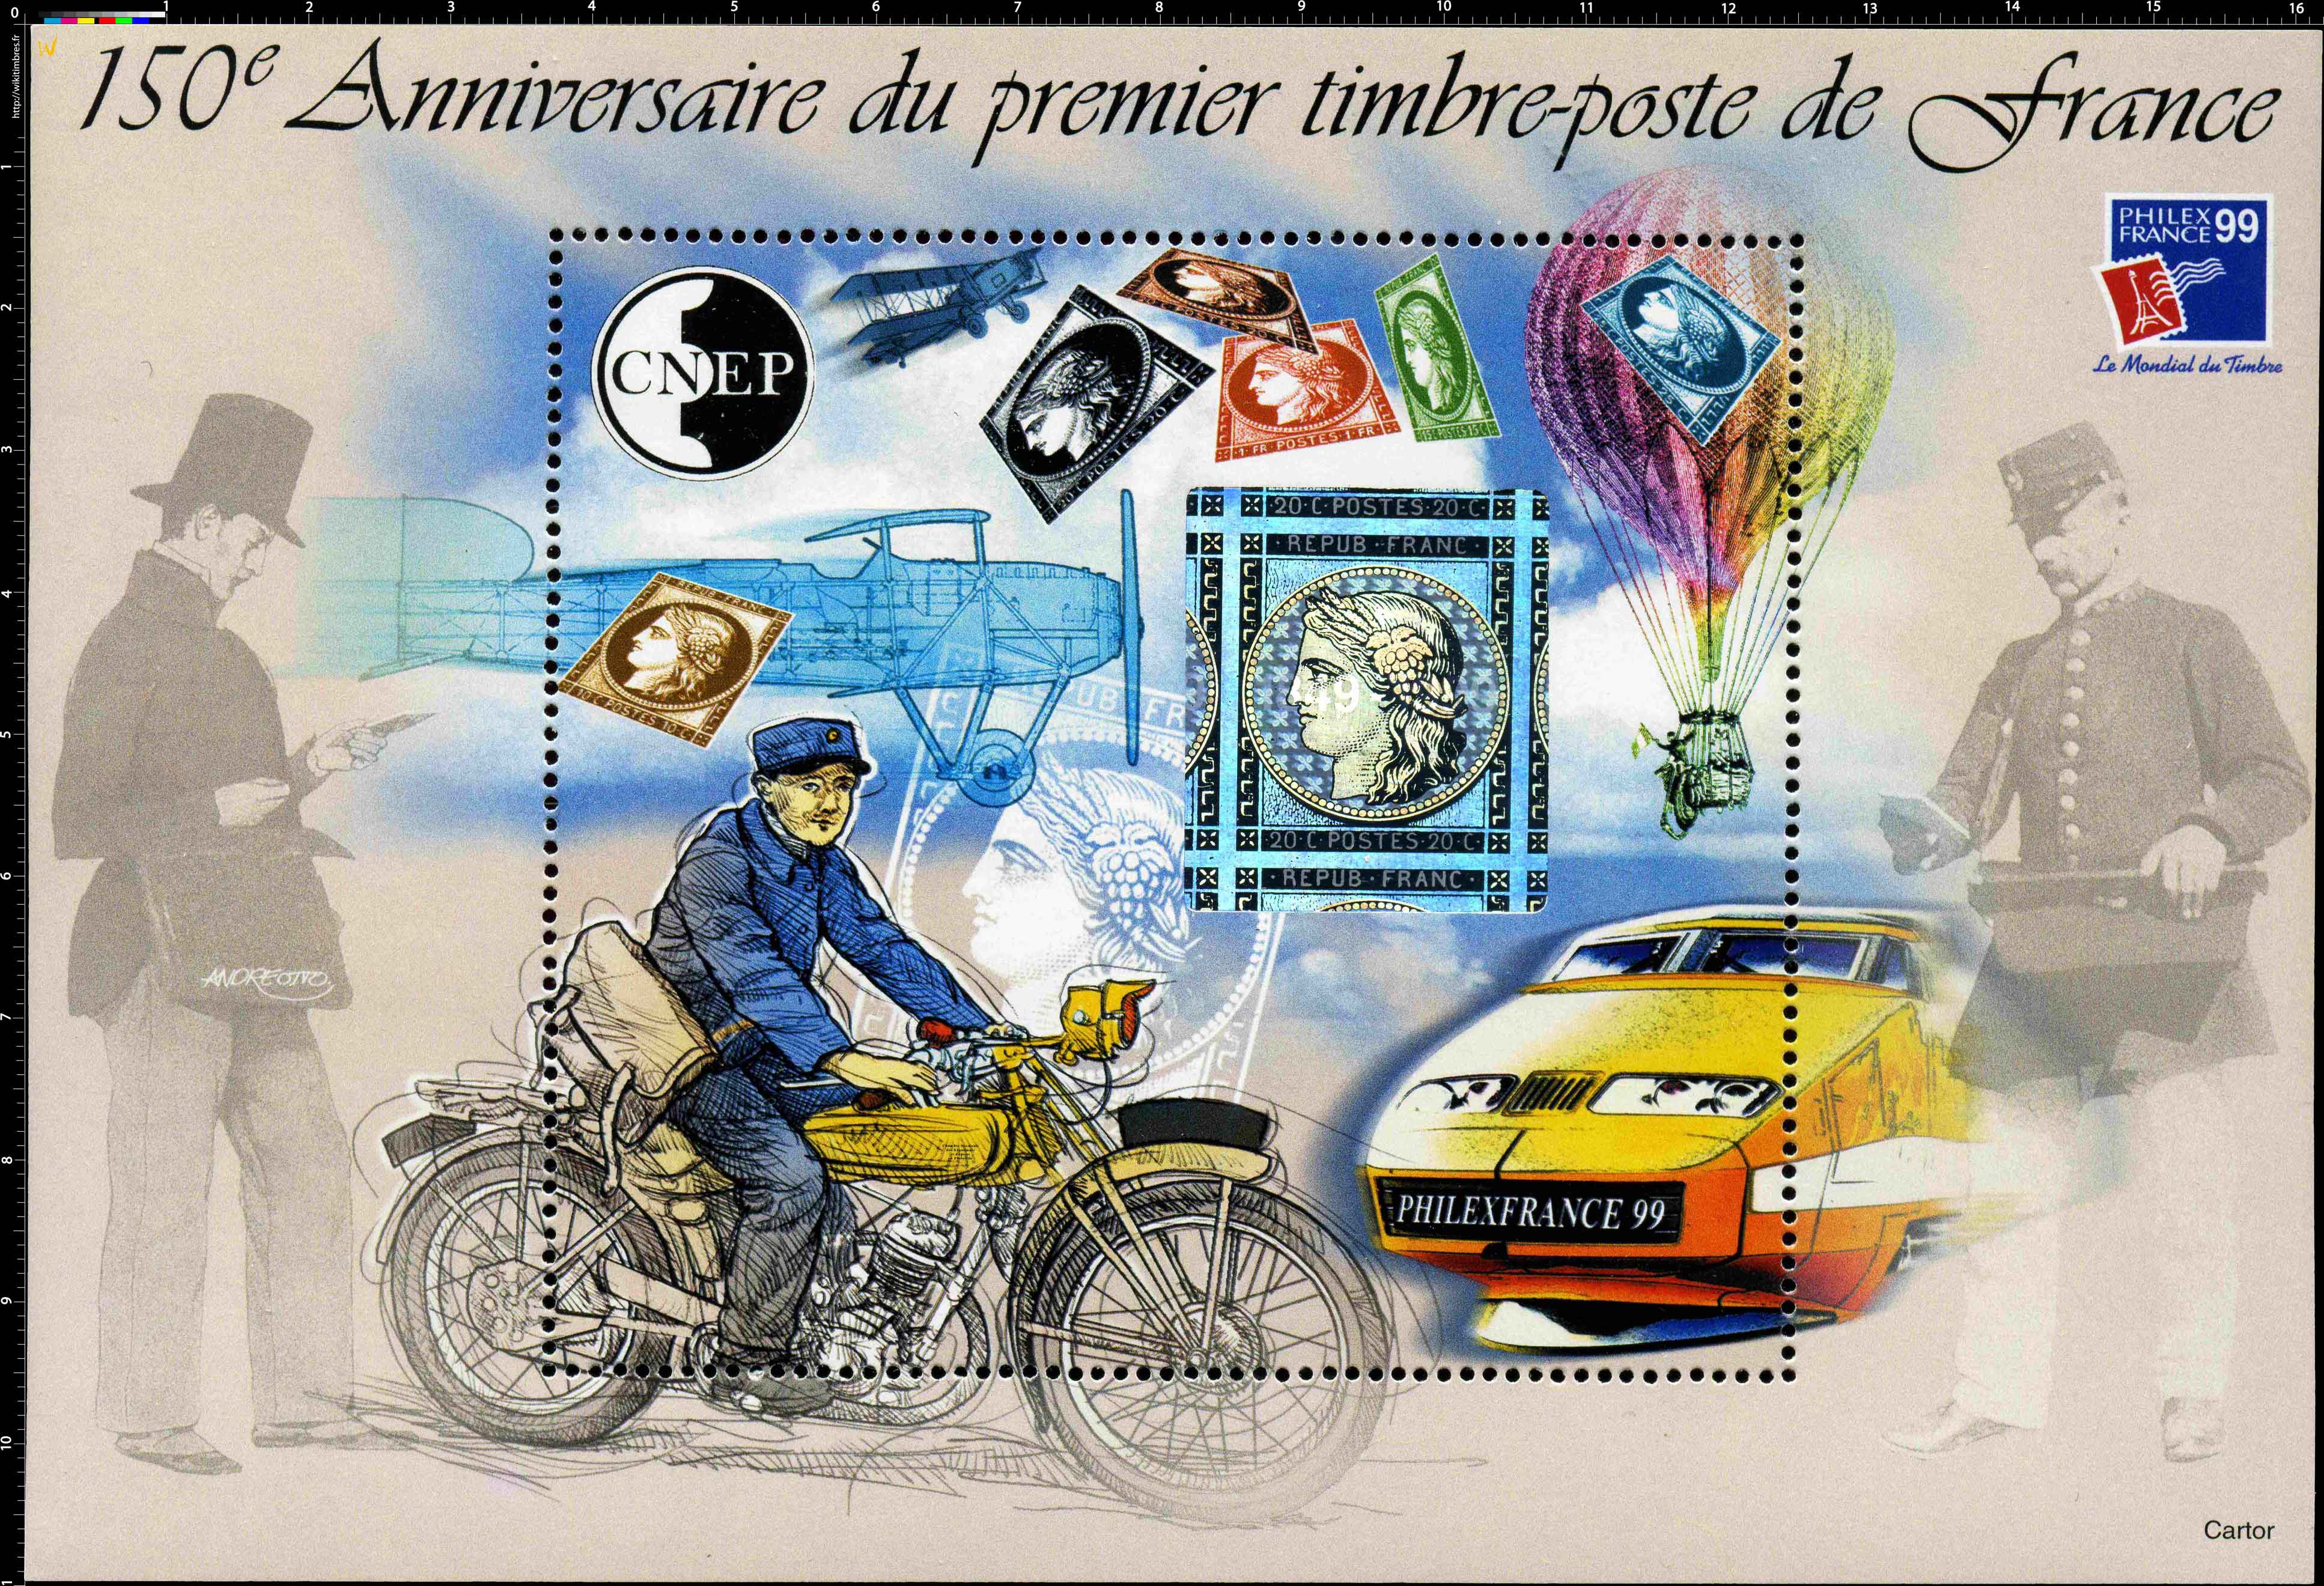 99 Philexfrance le mondial du timbre 150e Anniversaire du premier timbre-poste de France